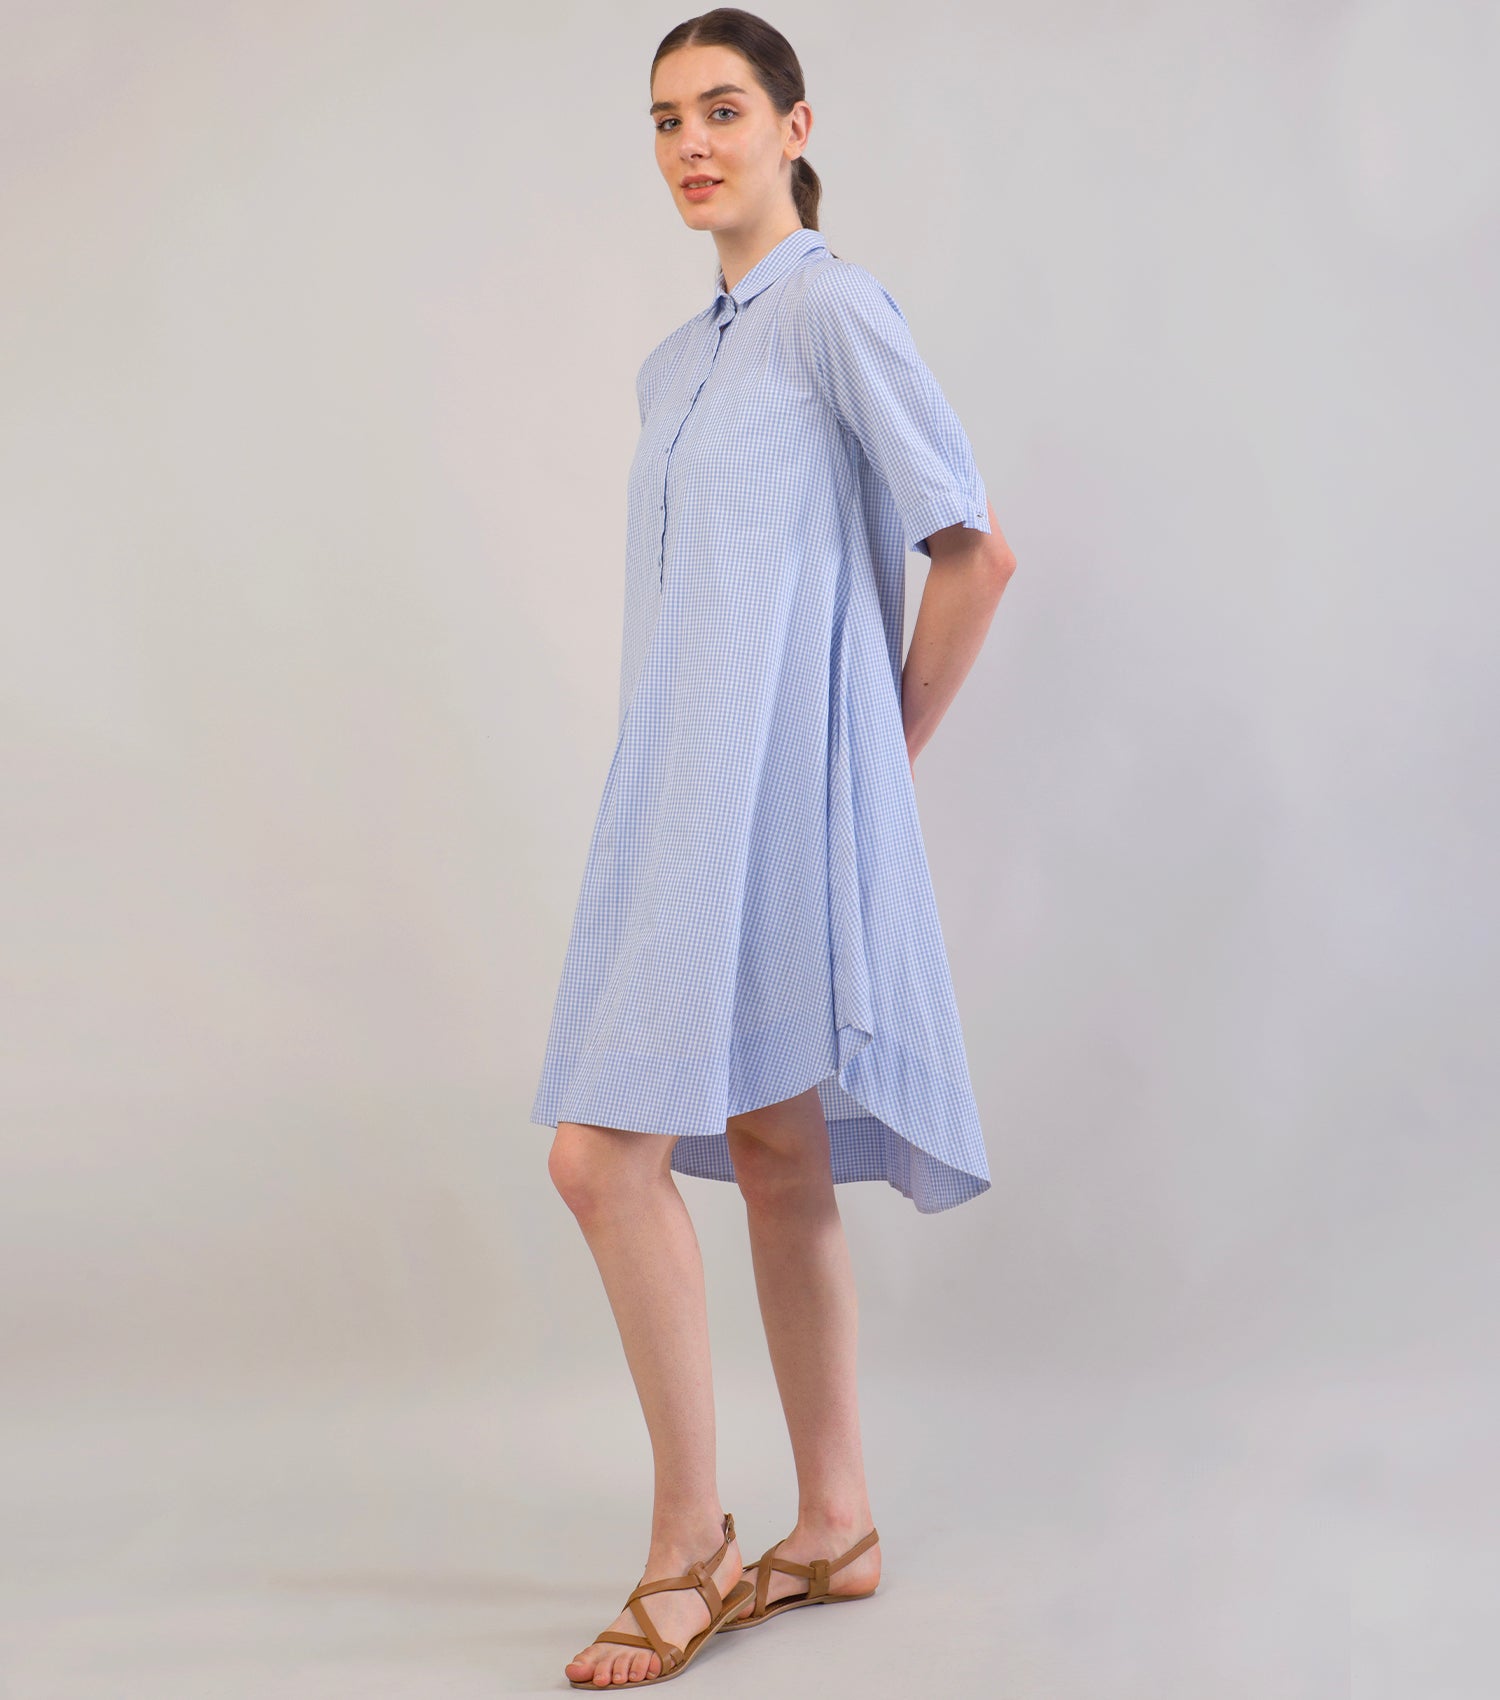 Sky Blue Summer Woven Cotton Dress